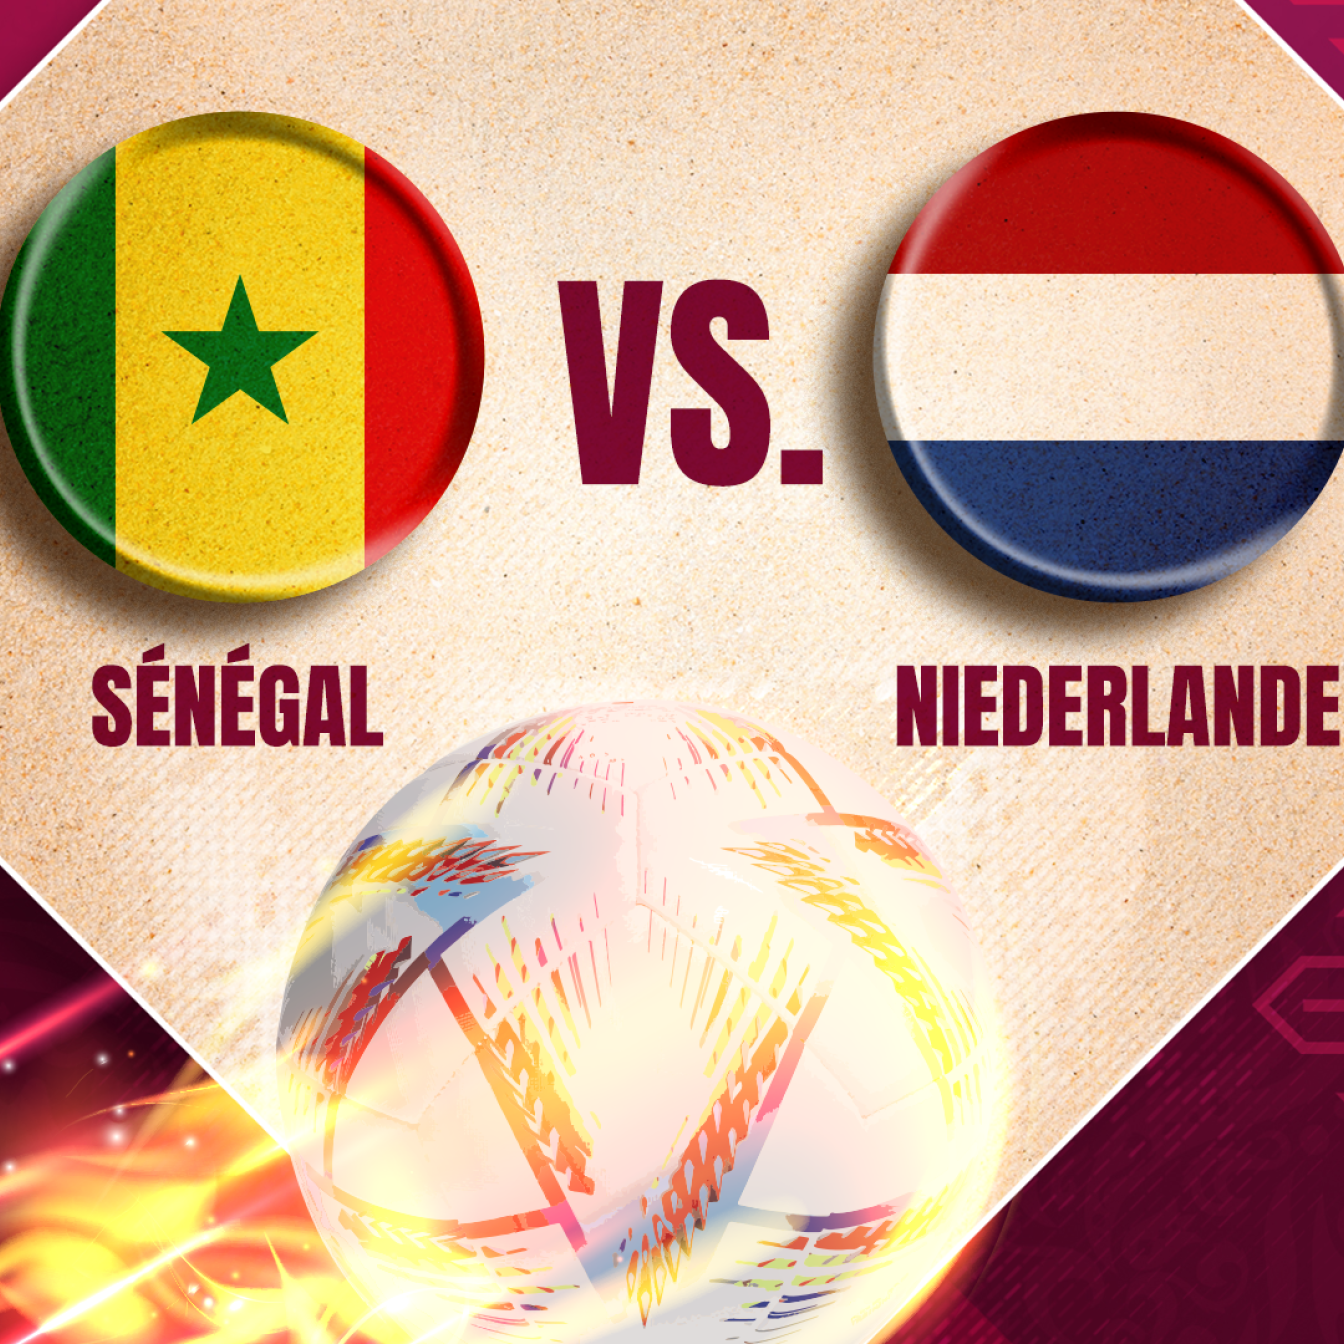 Das WM-Match zwischen Sénégal und Niederlande im Liveticker auf PULS 24.